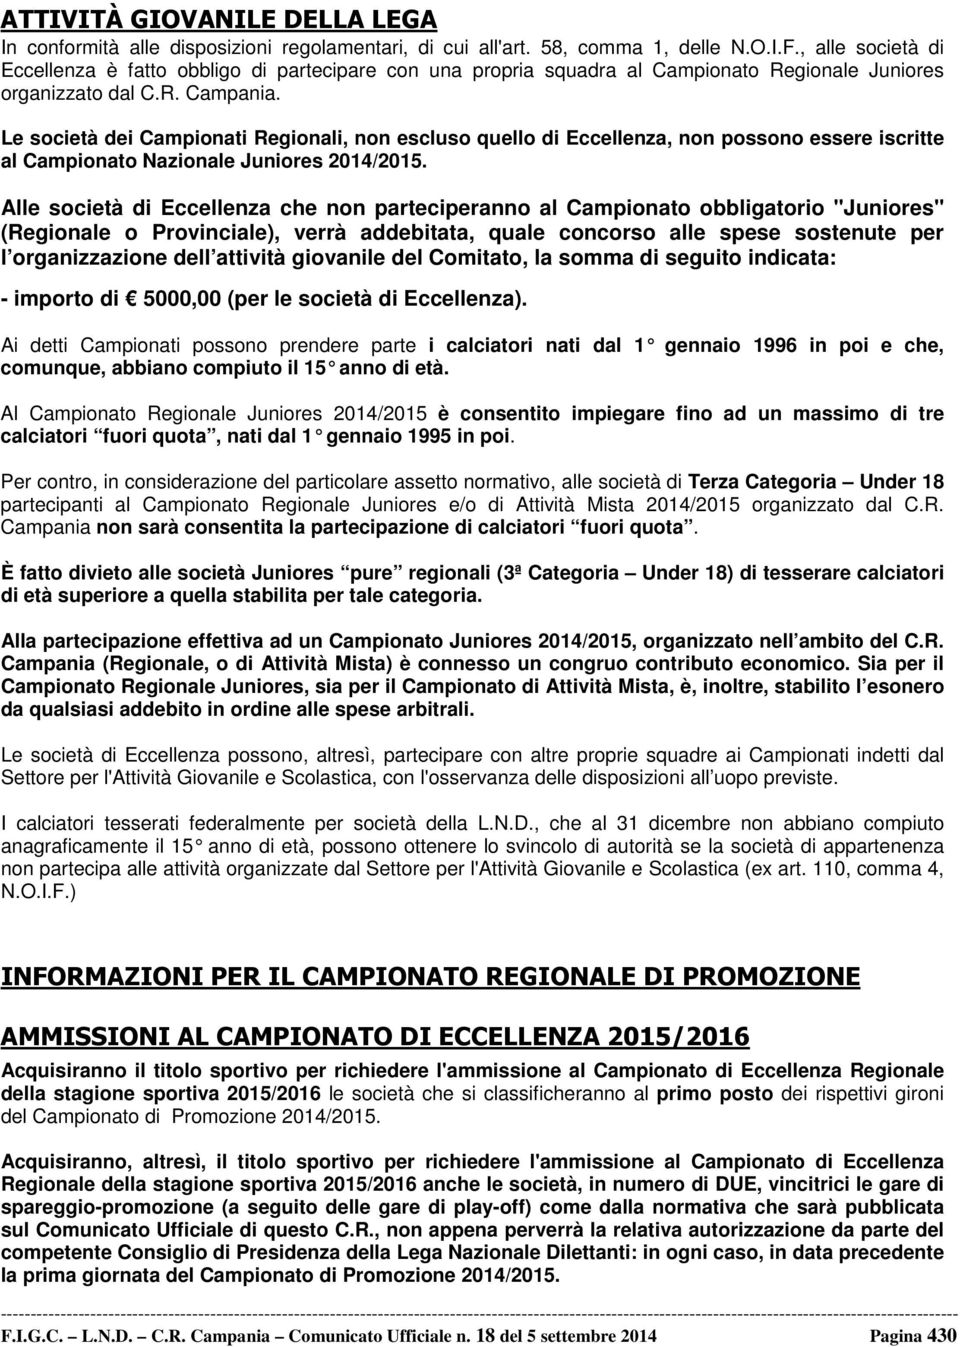 Le società dei Campionati Regionali, non escluso quello di Eccellenza, non possono essere iscritte al Campionato Nazionale Juniores 2014/2015.